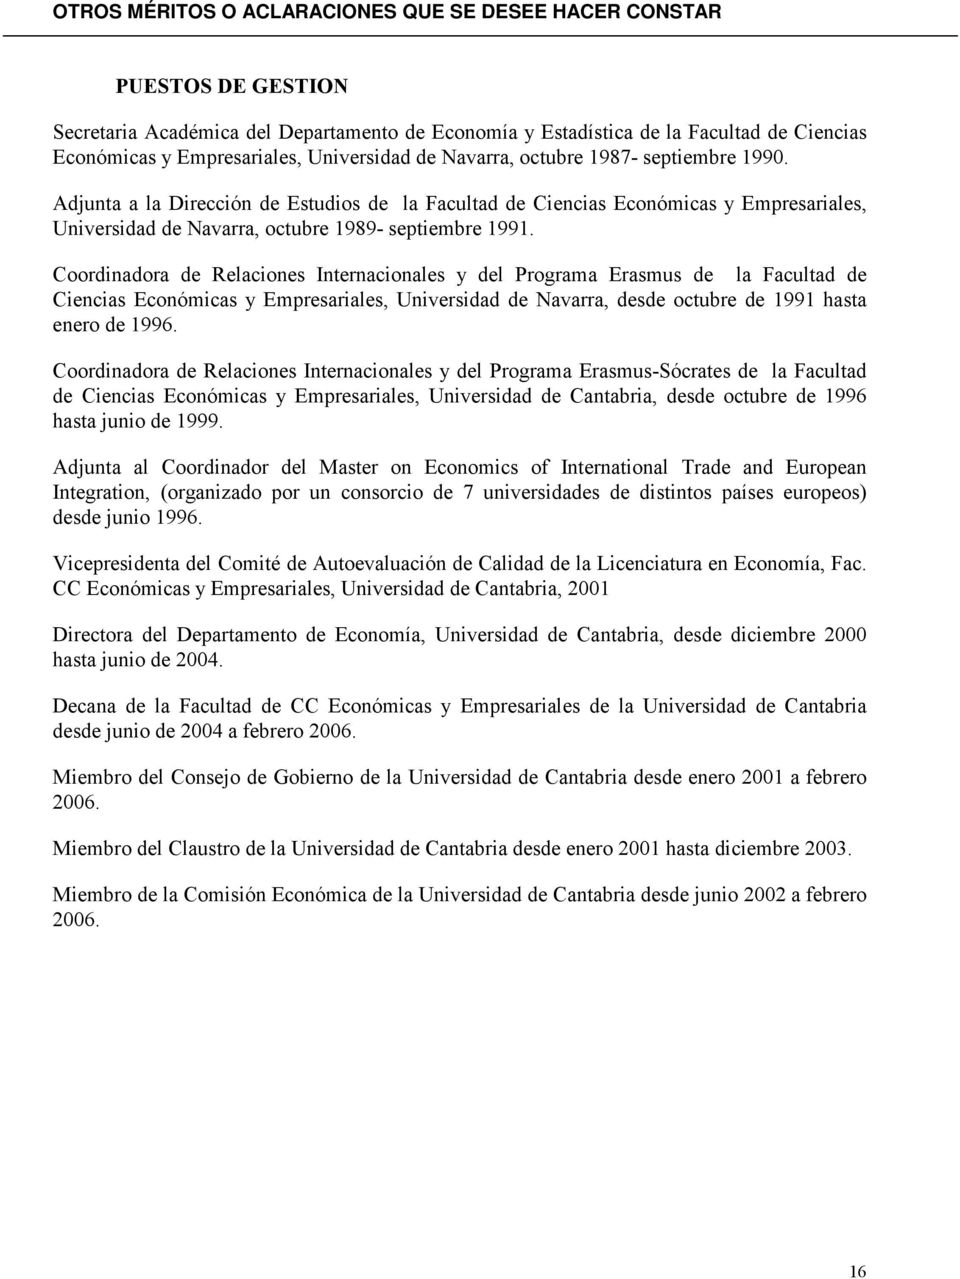 Coordinadora de Relaciones Internacionales y del Programa Erasmus de la Facultad de Ciencias Económicas y Empresariales, Universidad de Navarra, desde octubre de 1991 hasta enero de 1996.